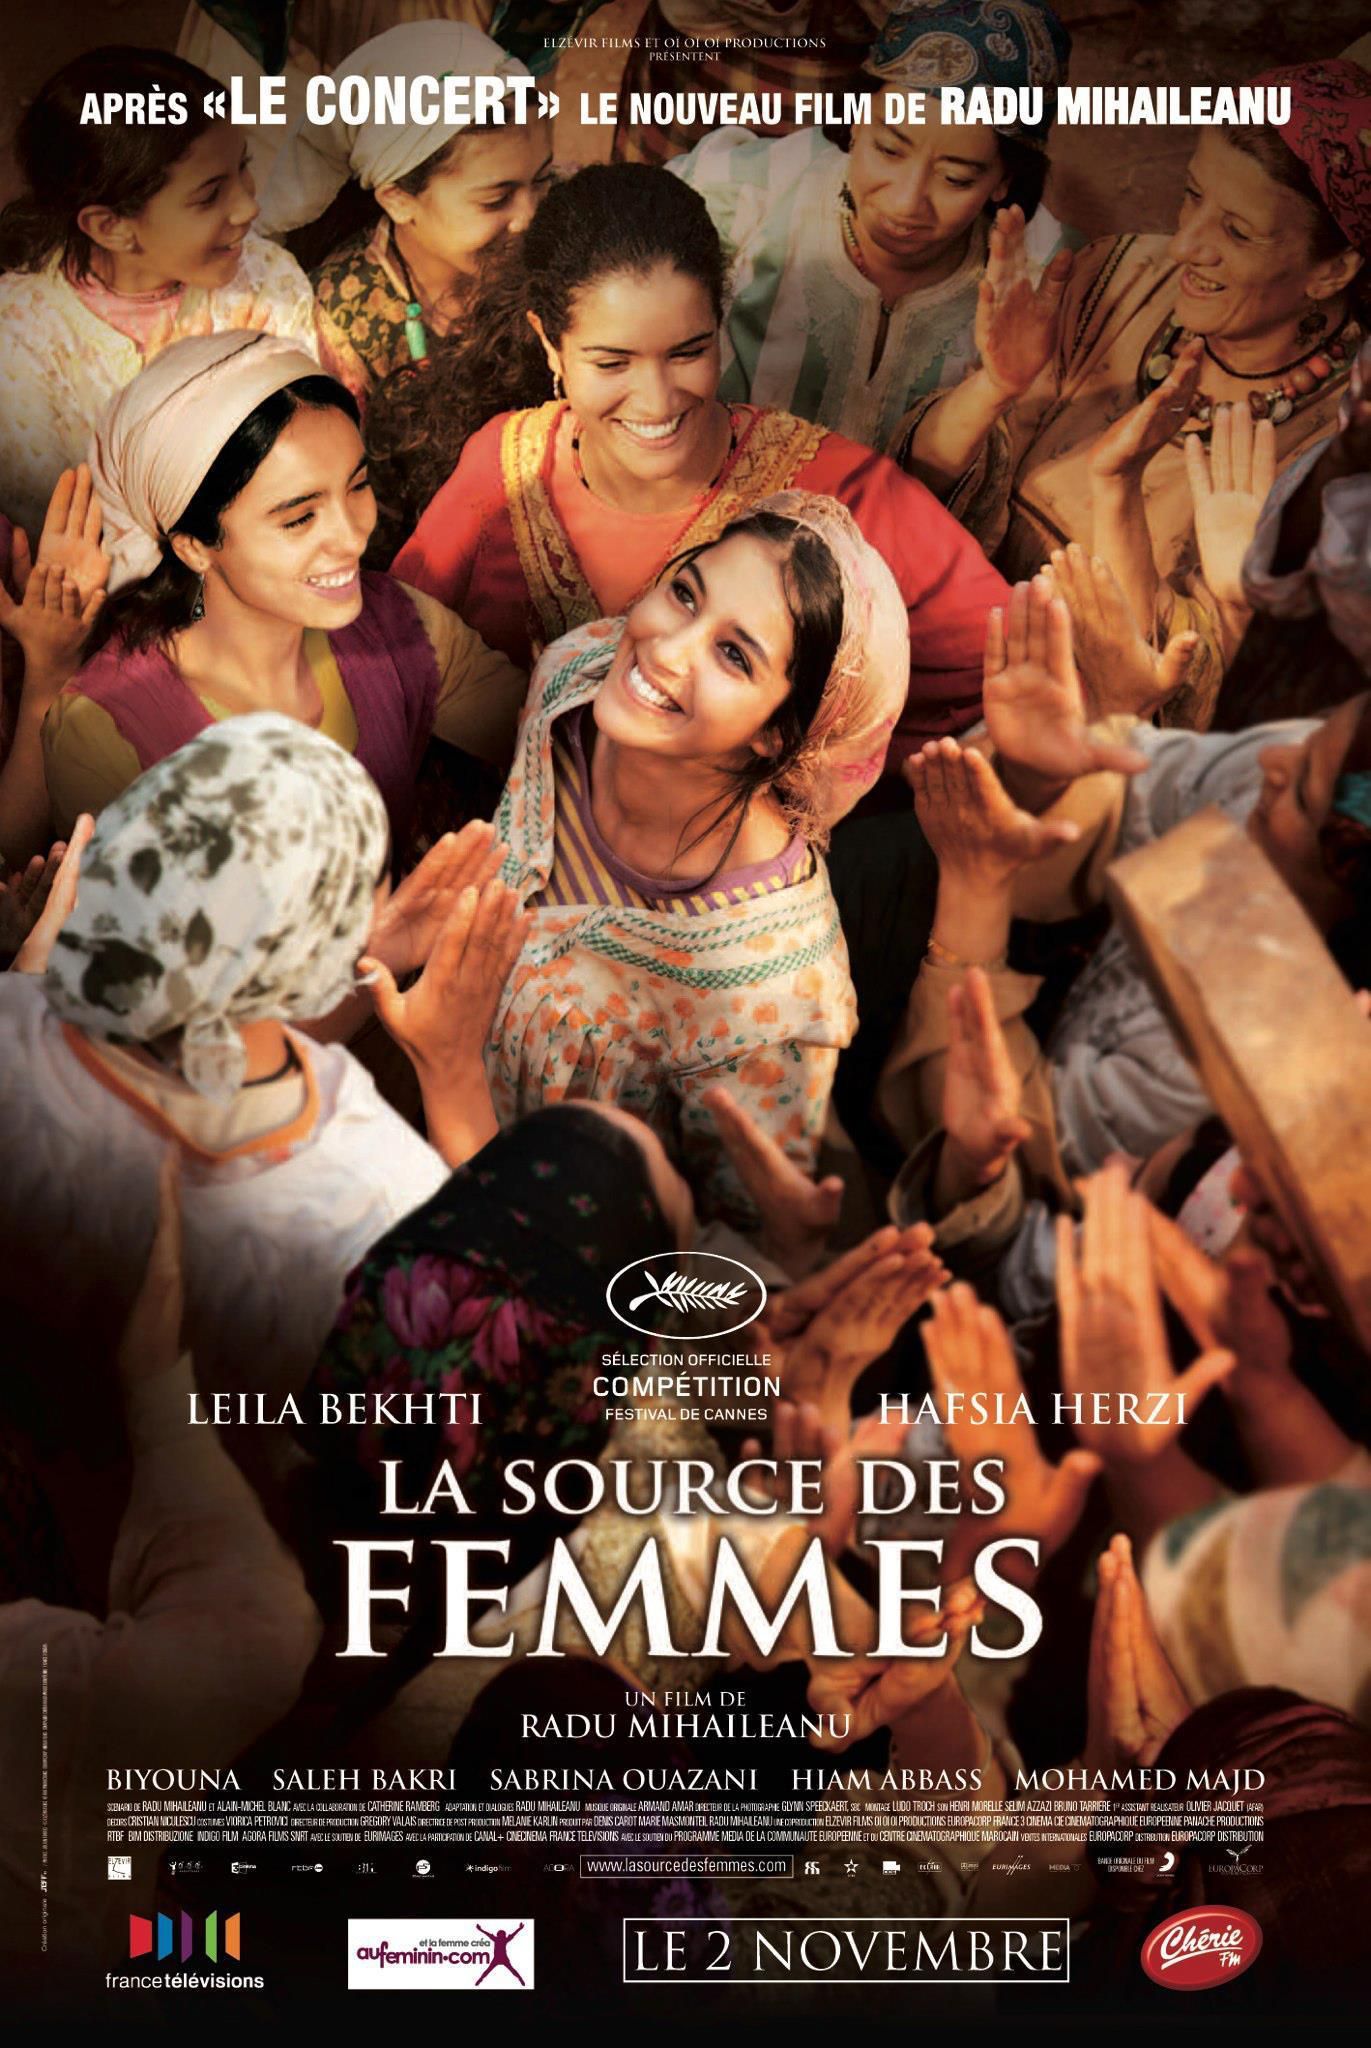 La Source des femmes - Film (2011) streaming VF gratuit complet